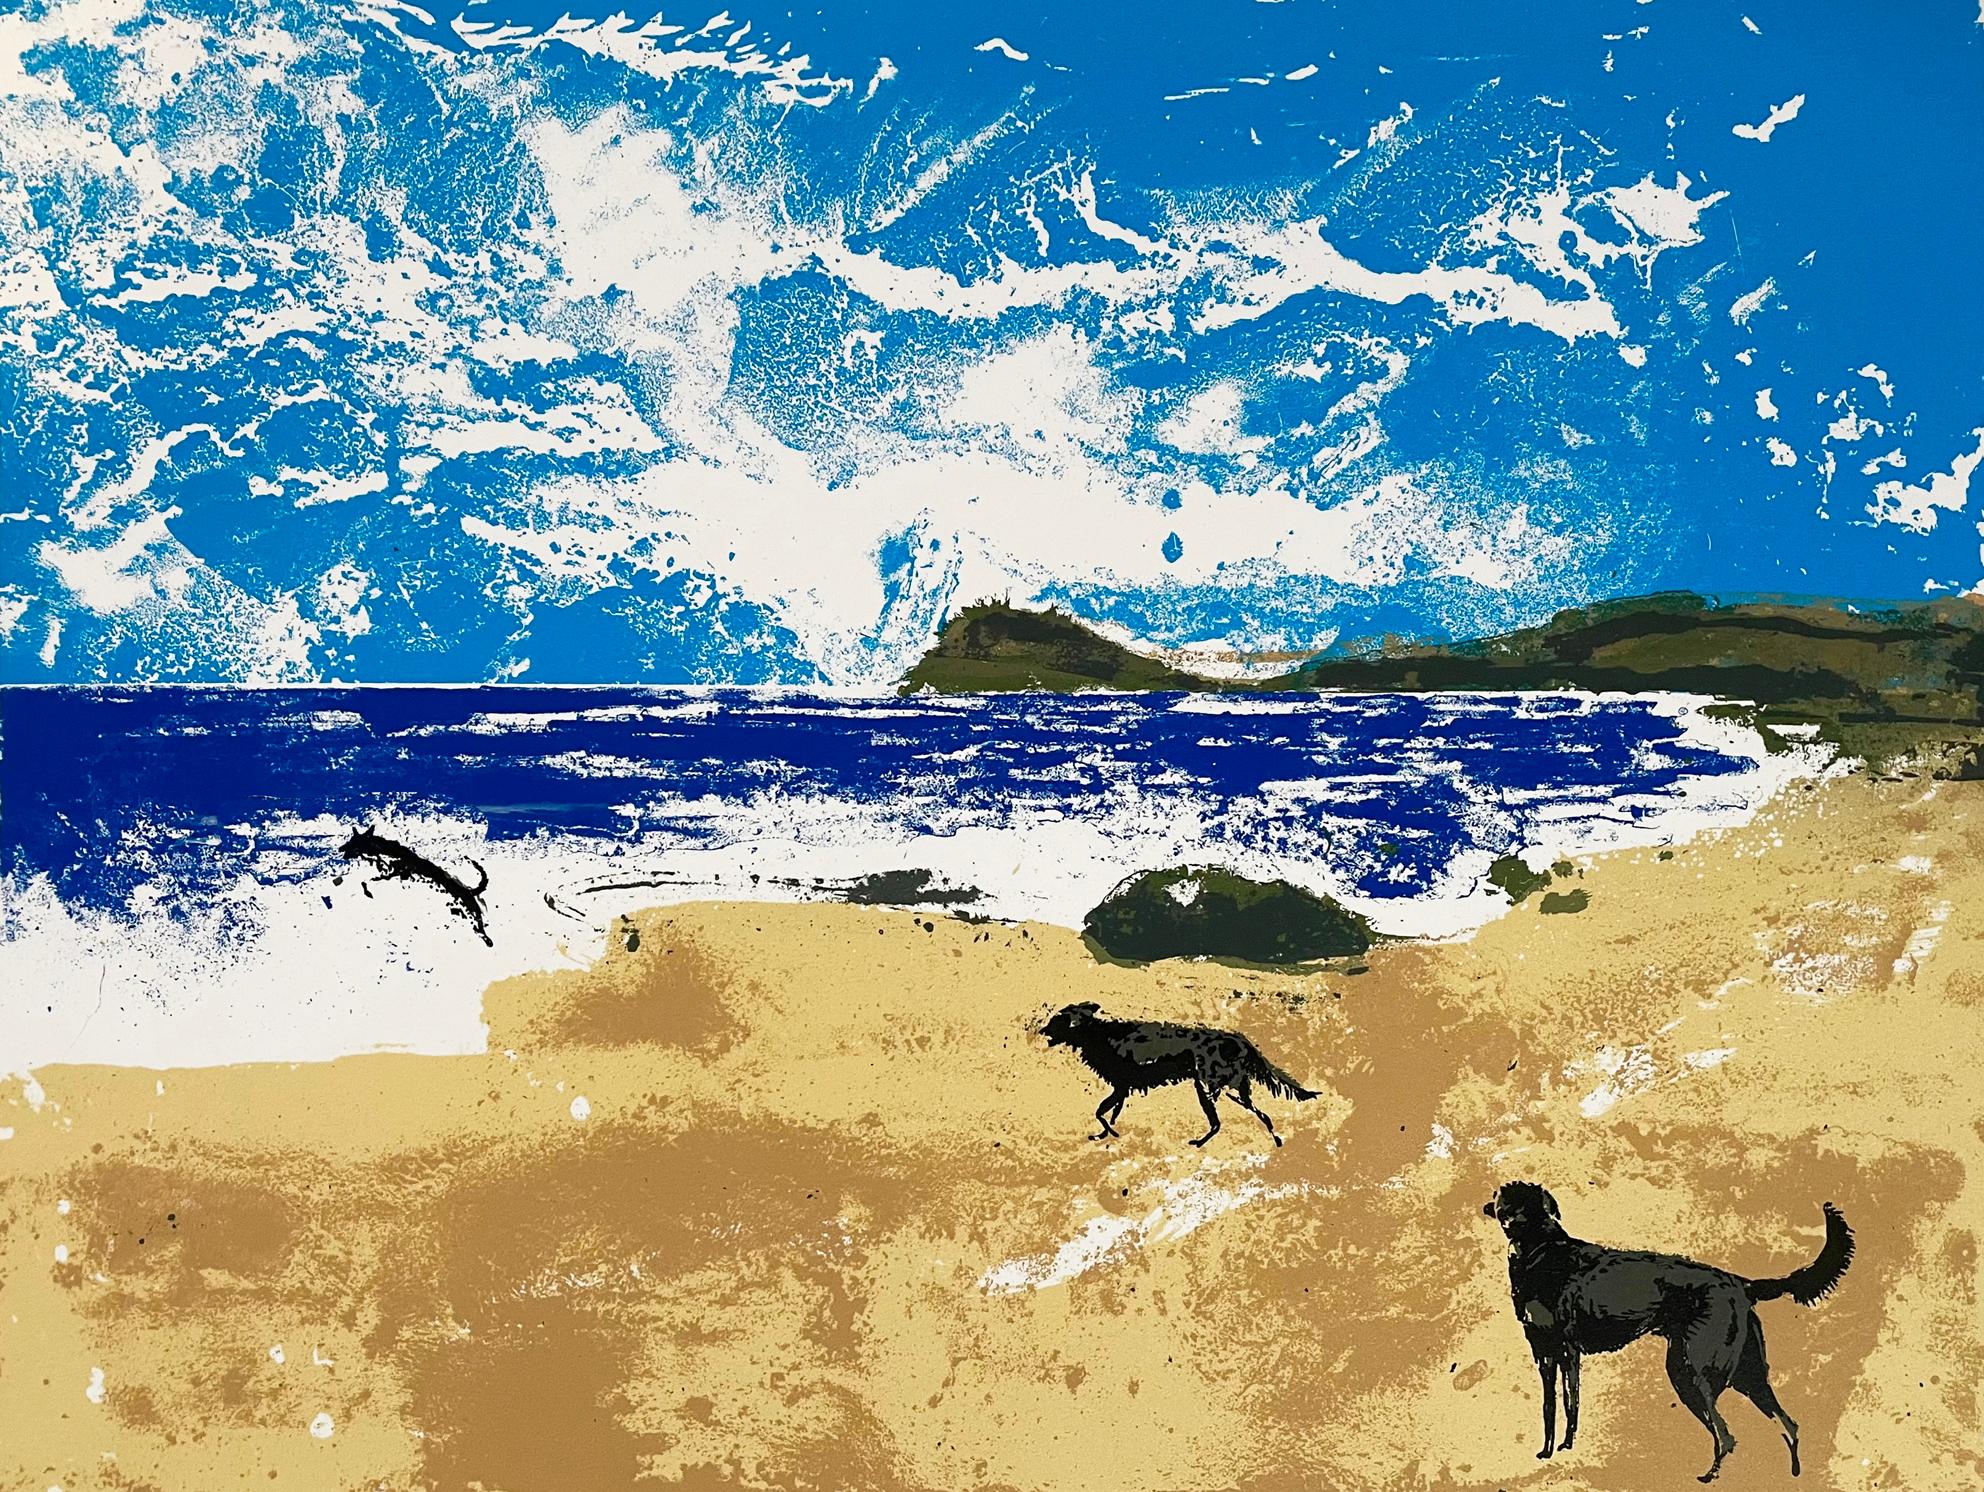 Drei Hunde haben Spaß an einem einsamen Strand. Dieser 6-Farben-Siebdruck wurde auf schwerem 300-Gramm-Büttenpapier von St Cuthbert's Mill in Somerset hergestellt. Der Druck entsteht, indem jede Farbe einzeln gedruckt wird und sich das Bild nach und